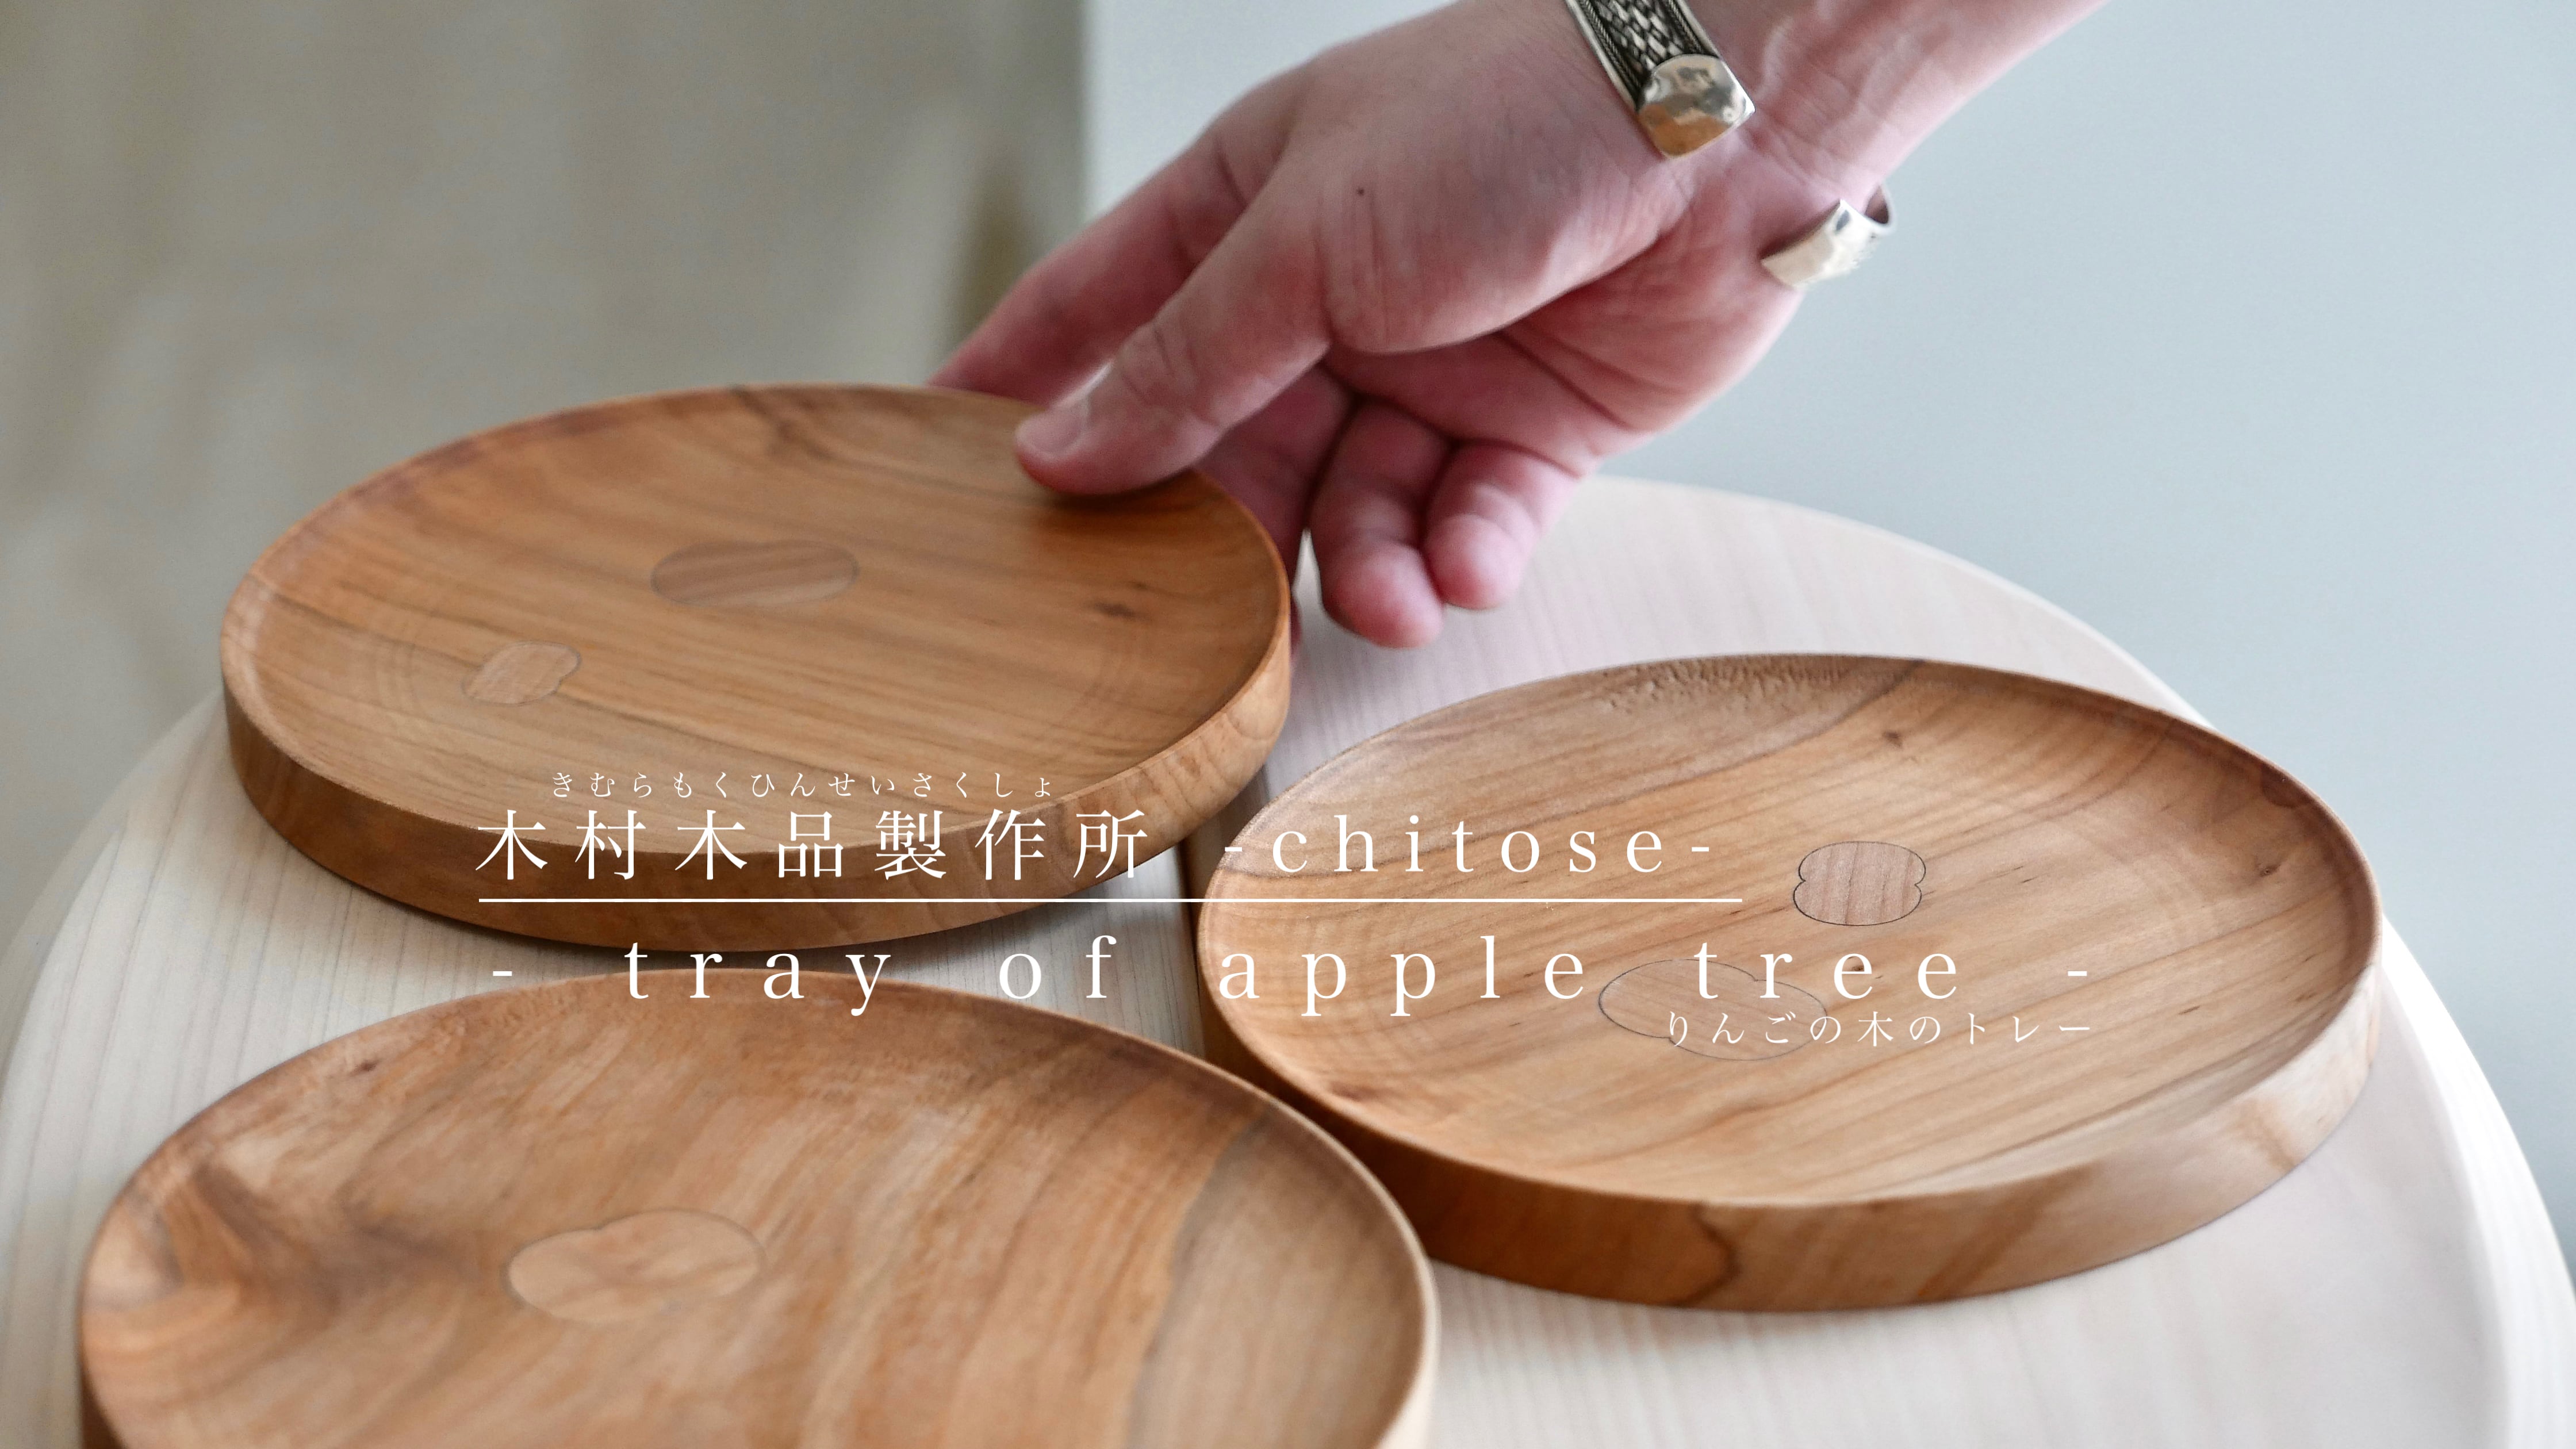 木村木品製作所 -chitose-　" tray of apple tree " りんごの木のトレー